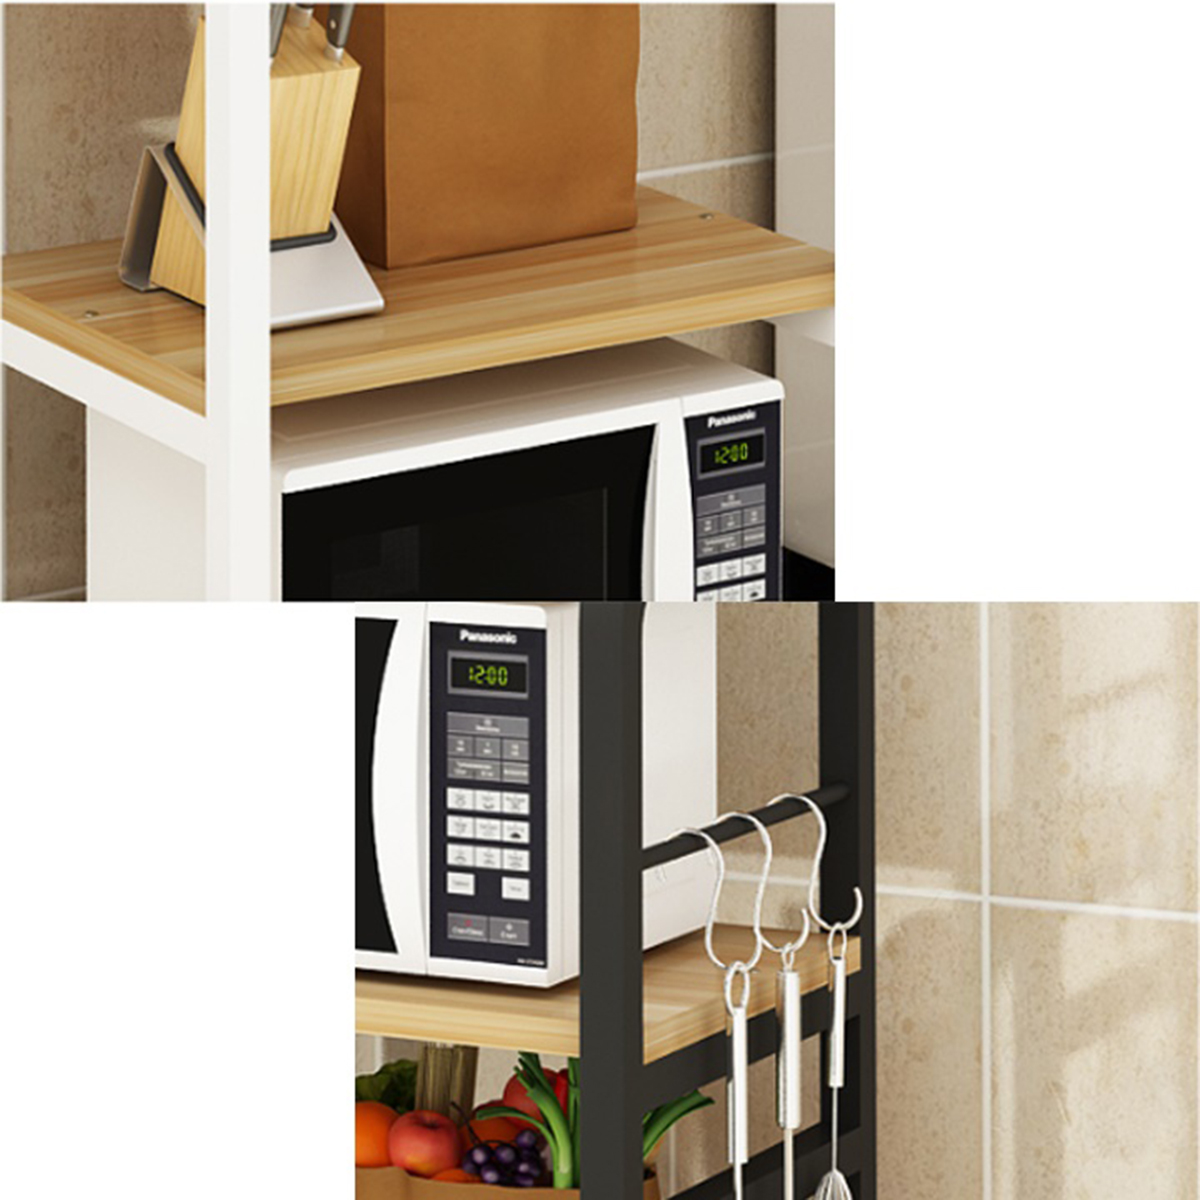 Tủ kệ nhà bếp đa năng ASGD2011 đừng đồ dùng nhà bếp, chất liệu hợp kim sơn tĩnh điện, mặt bằng gỗ MDF thiết kế bốn tầng thông minh tiện ích giao màu ngẫu nhiên